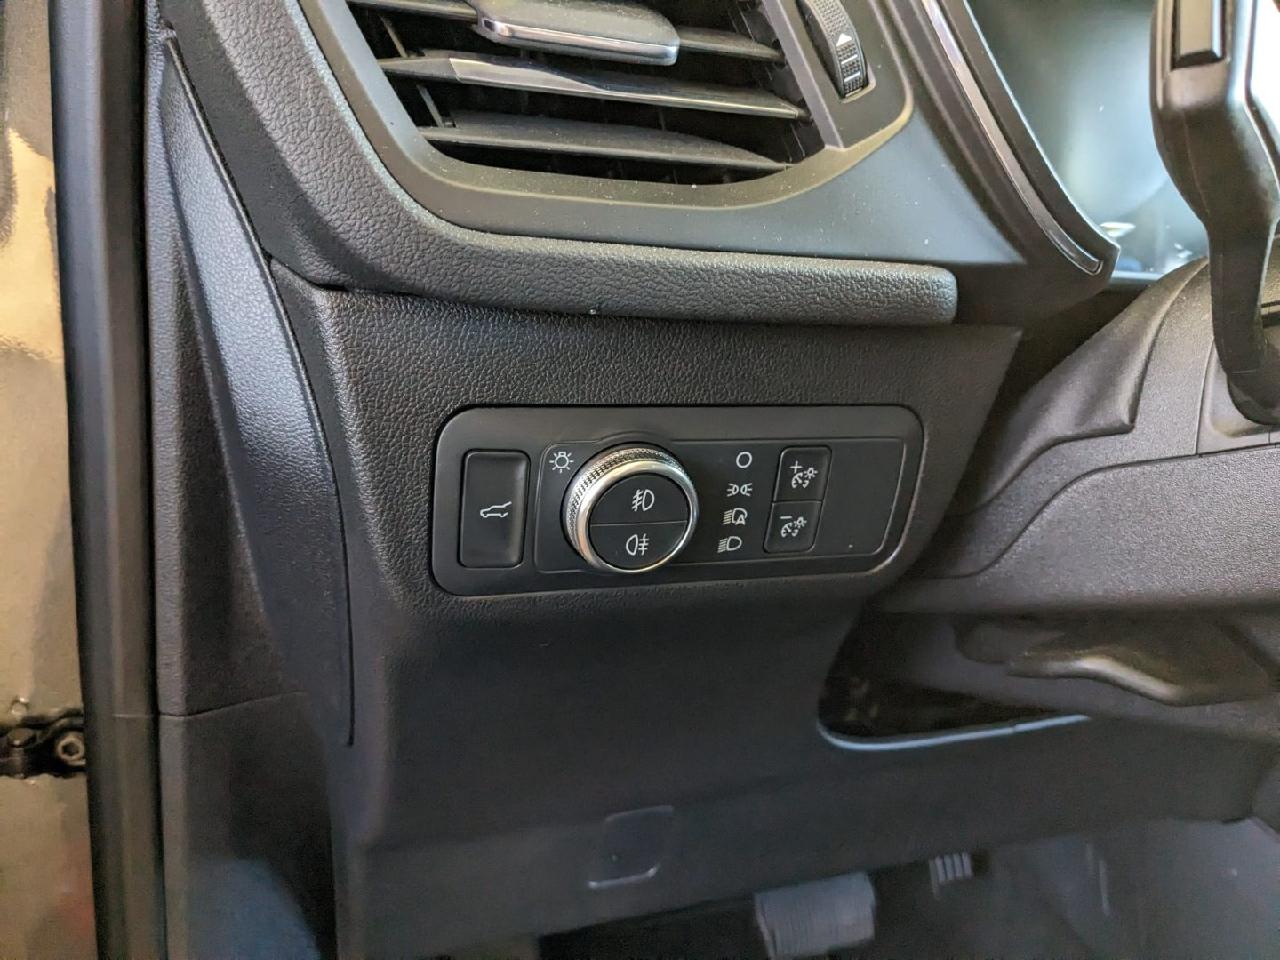 Für ford kuga focus 2 C-MAX auto innen lenkrad abdeckung hand genähtes  perforiertes leder mit nadeln & fäden kits